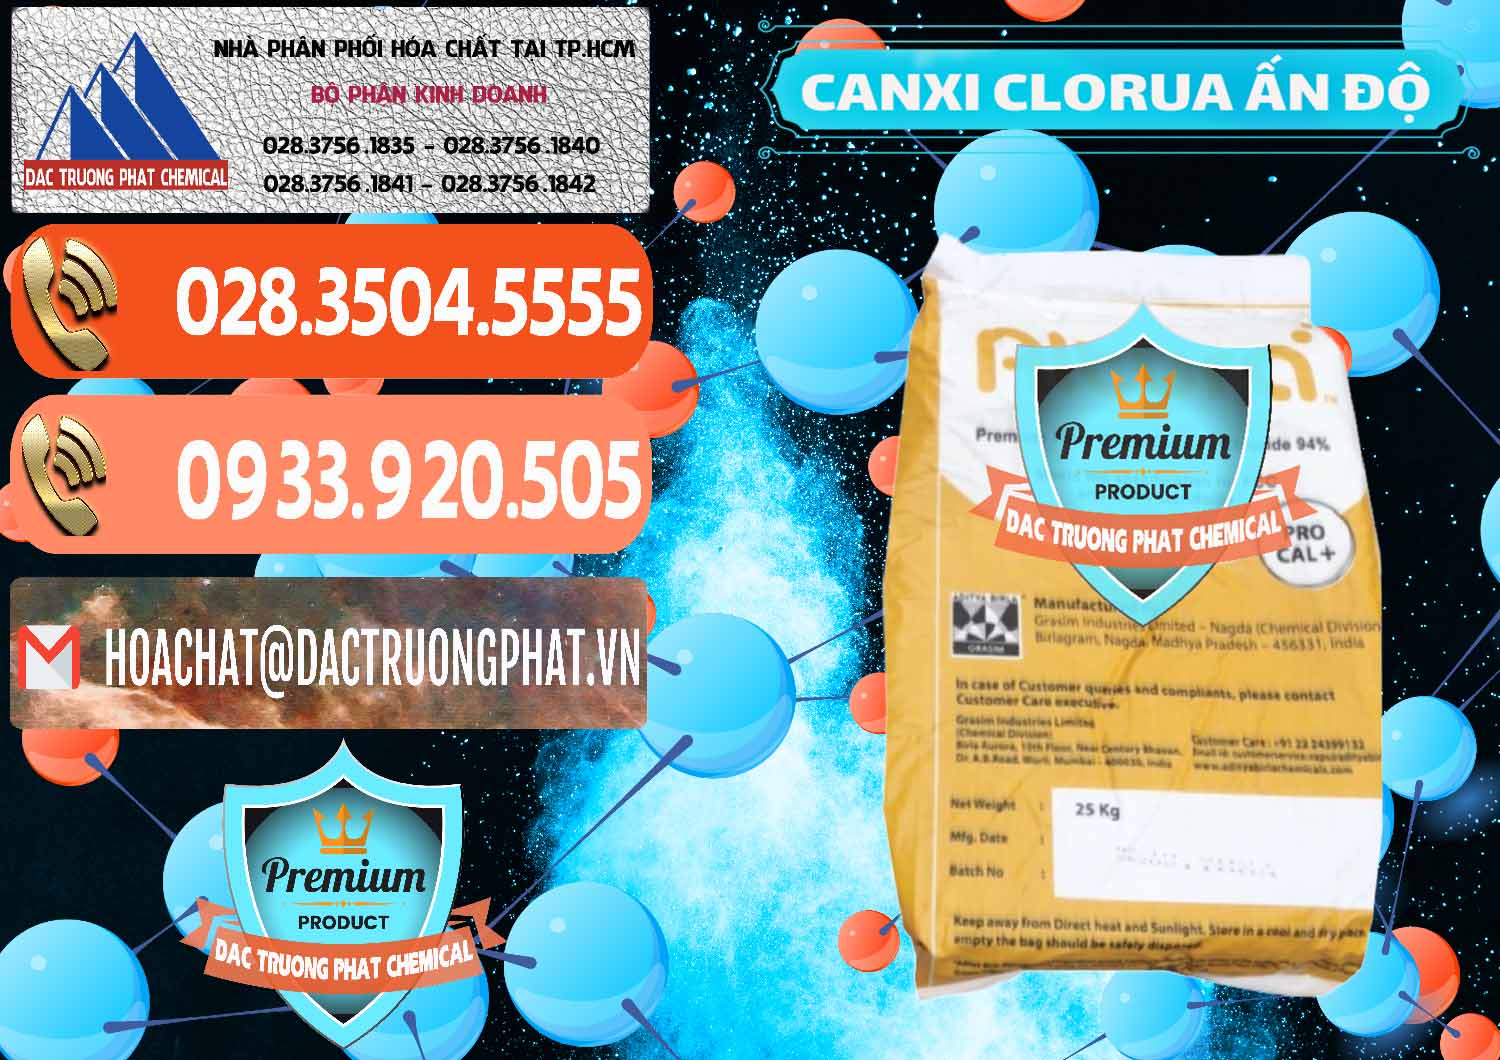 Đơn vị chuyên bán _ cung ứng CaCl2 – Canxi Clorua Food Grade Altura Aditya Birla Grasim Ấn Độ India - 0436 - Phân phối ( cung ứng ) hóa chất tại TP.HCM - hoachatmientay.com